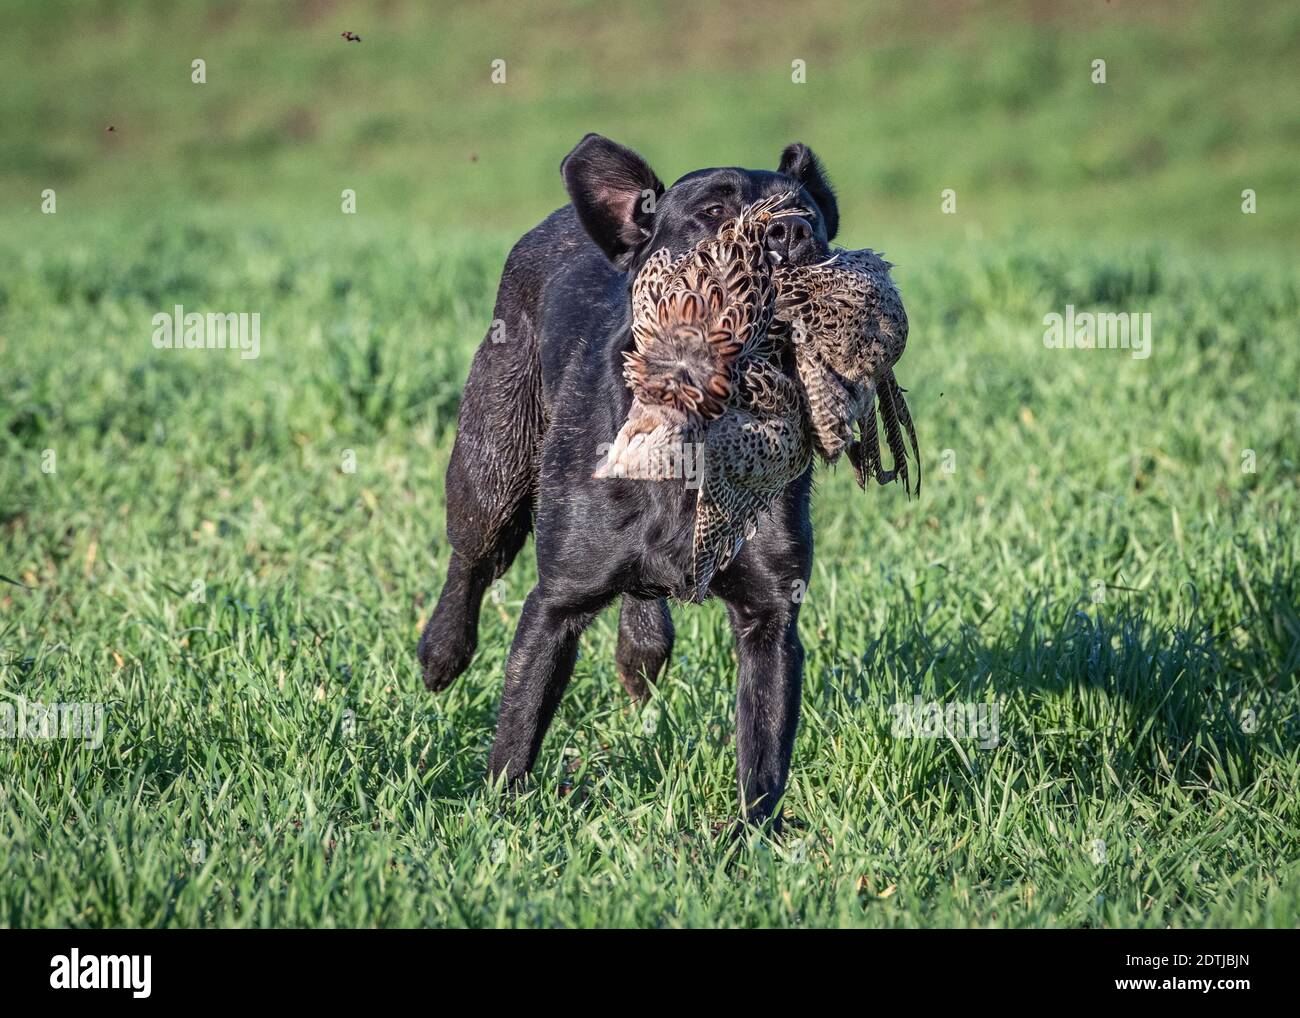 Black Labrador Retriever Stock Photo